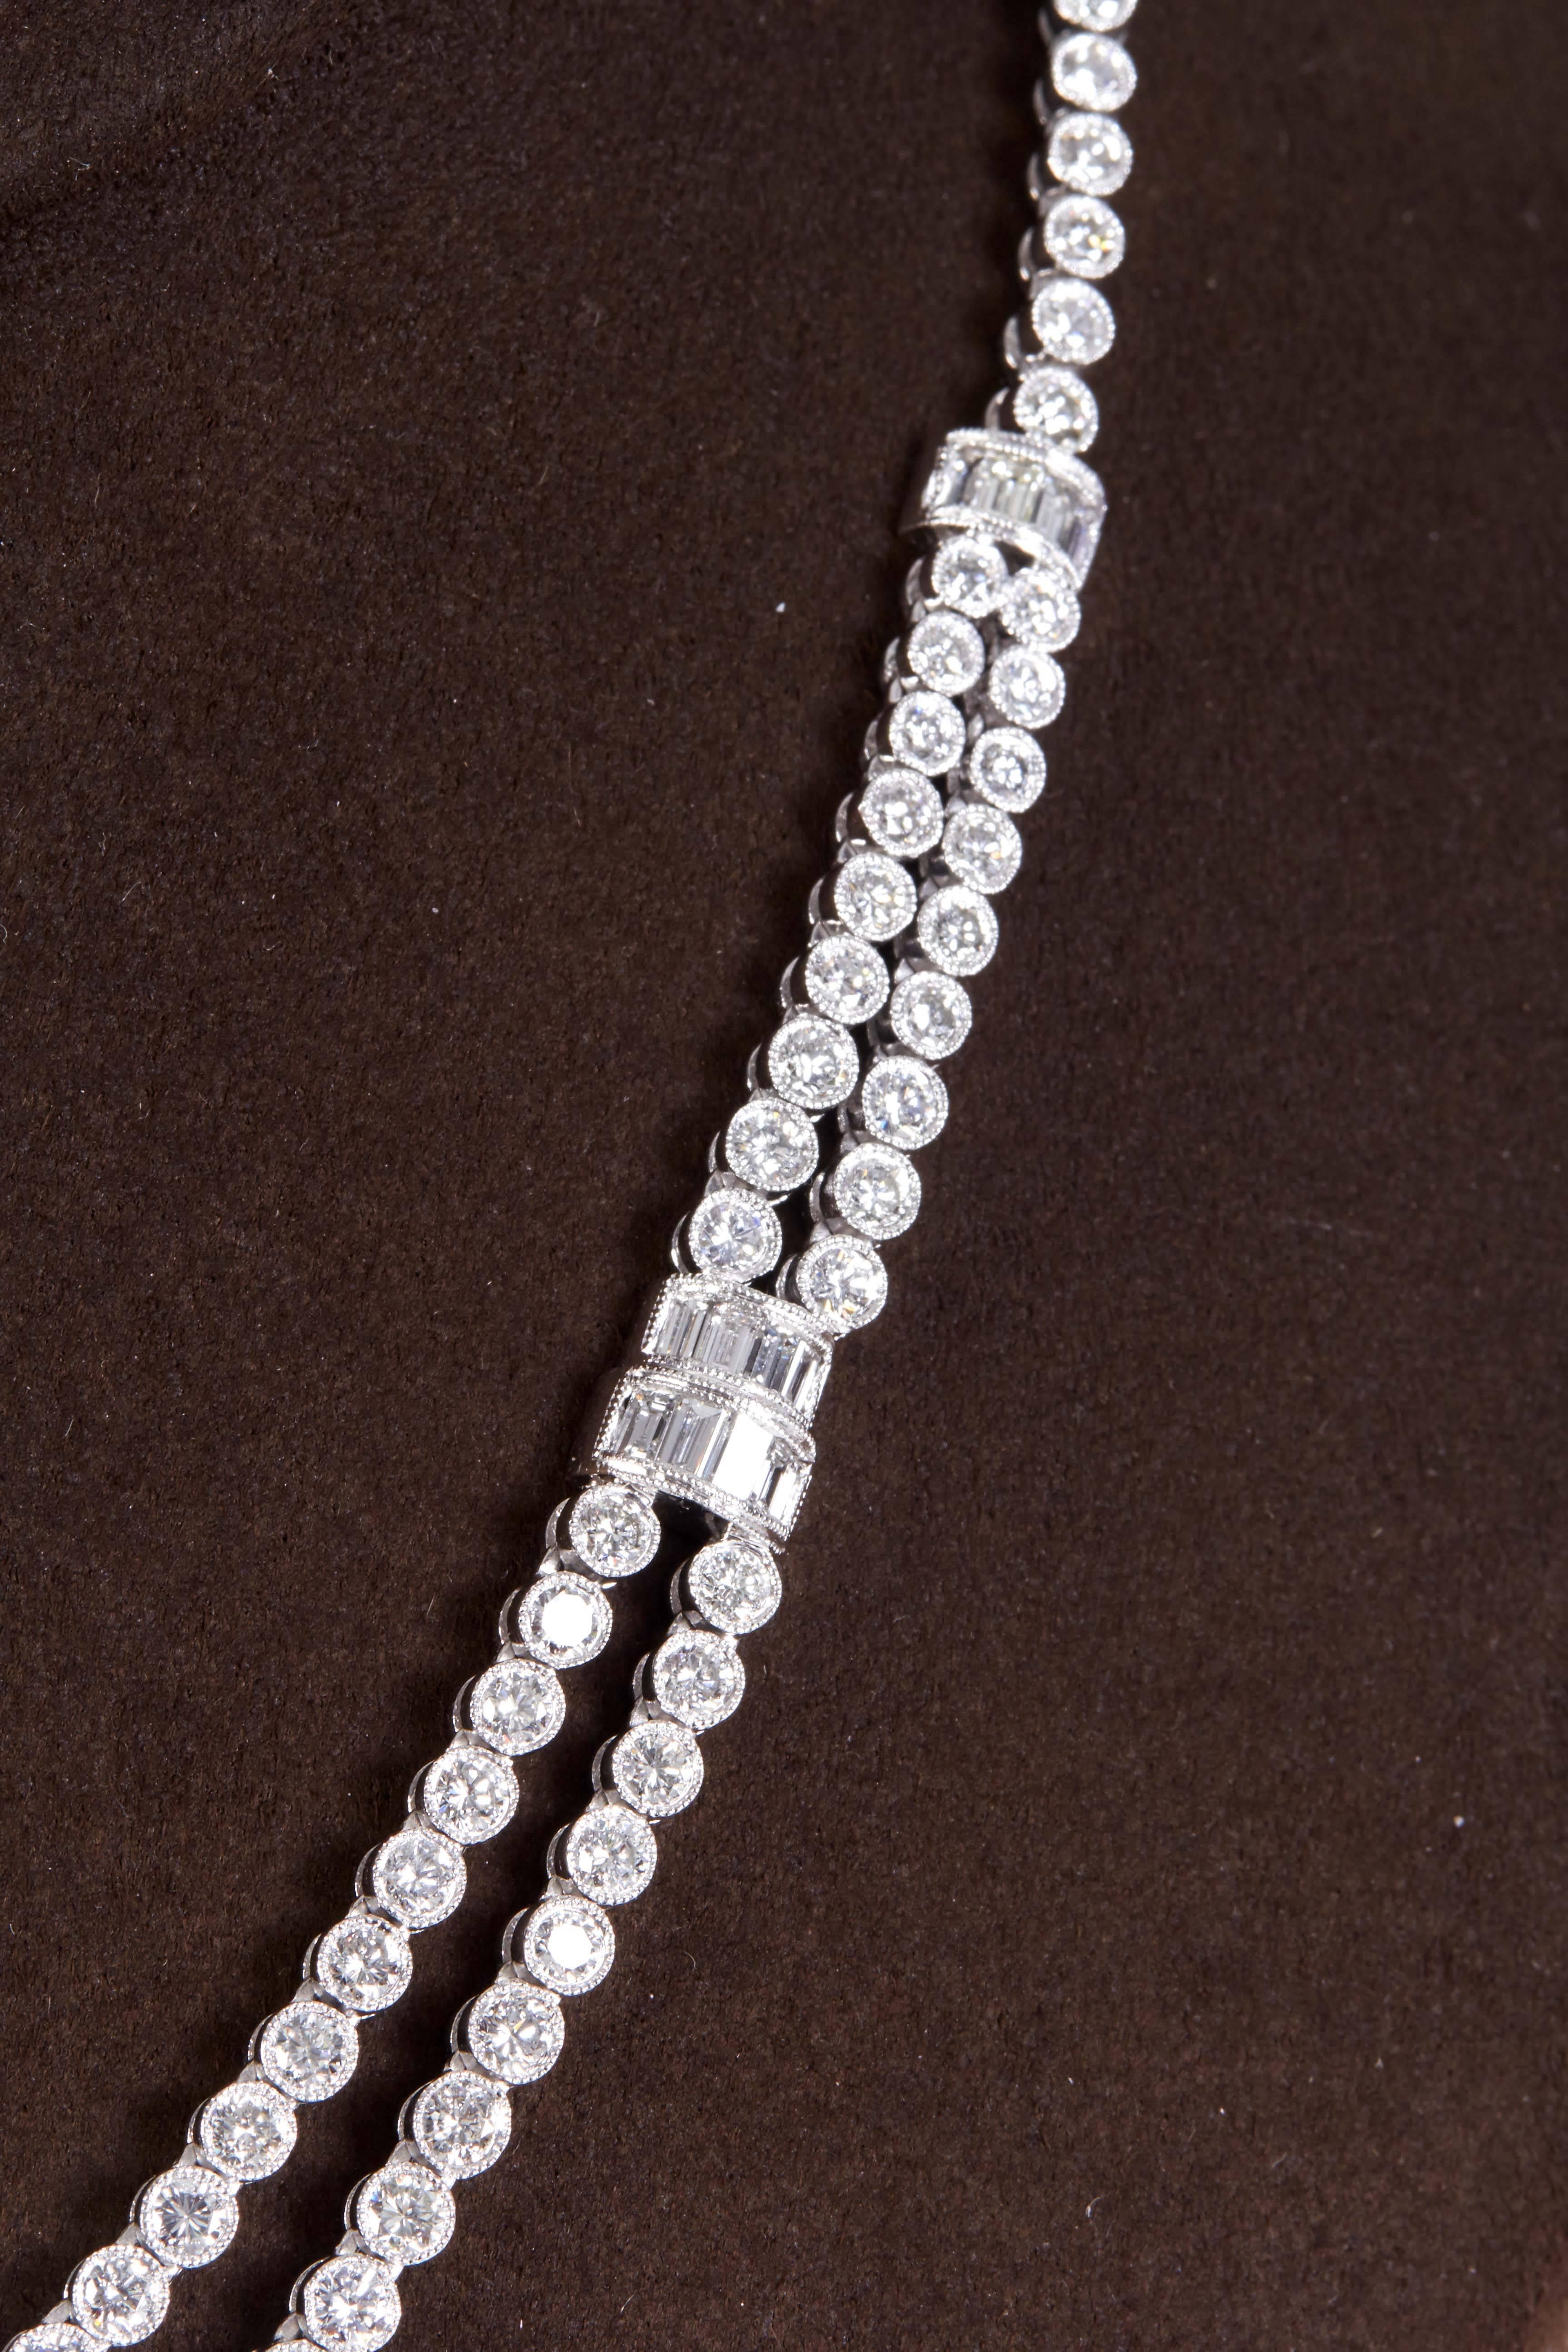 
Un collier de diamants intemporel avec une touche vintage.

11,64 carats de diamants ronds et baguettes F/G VS sertis en platine. 

Les diamants ronds sont sertis en chaton avec des perles.

Longueur d'environ 16 pouces qui peut être ajustée si